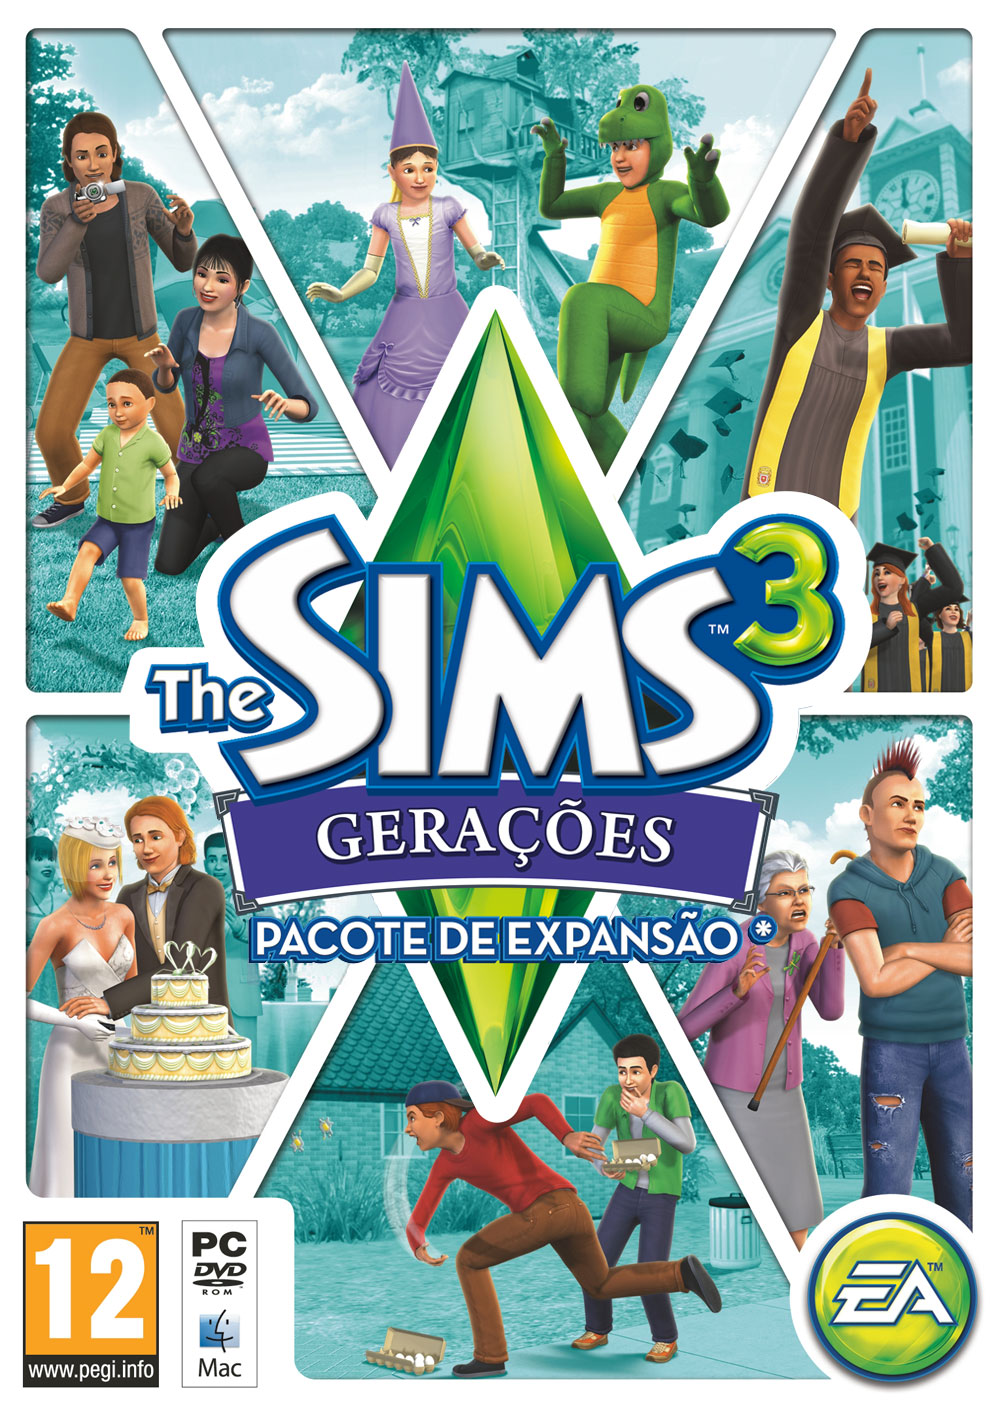 Sims 3 Crack